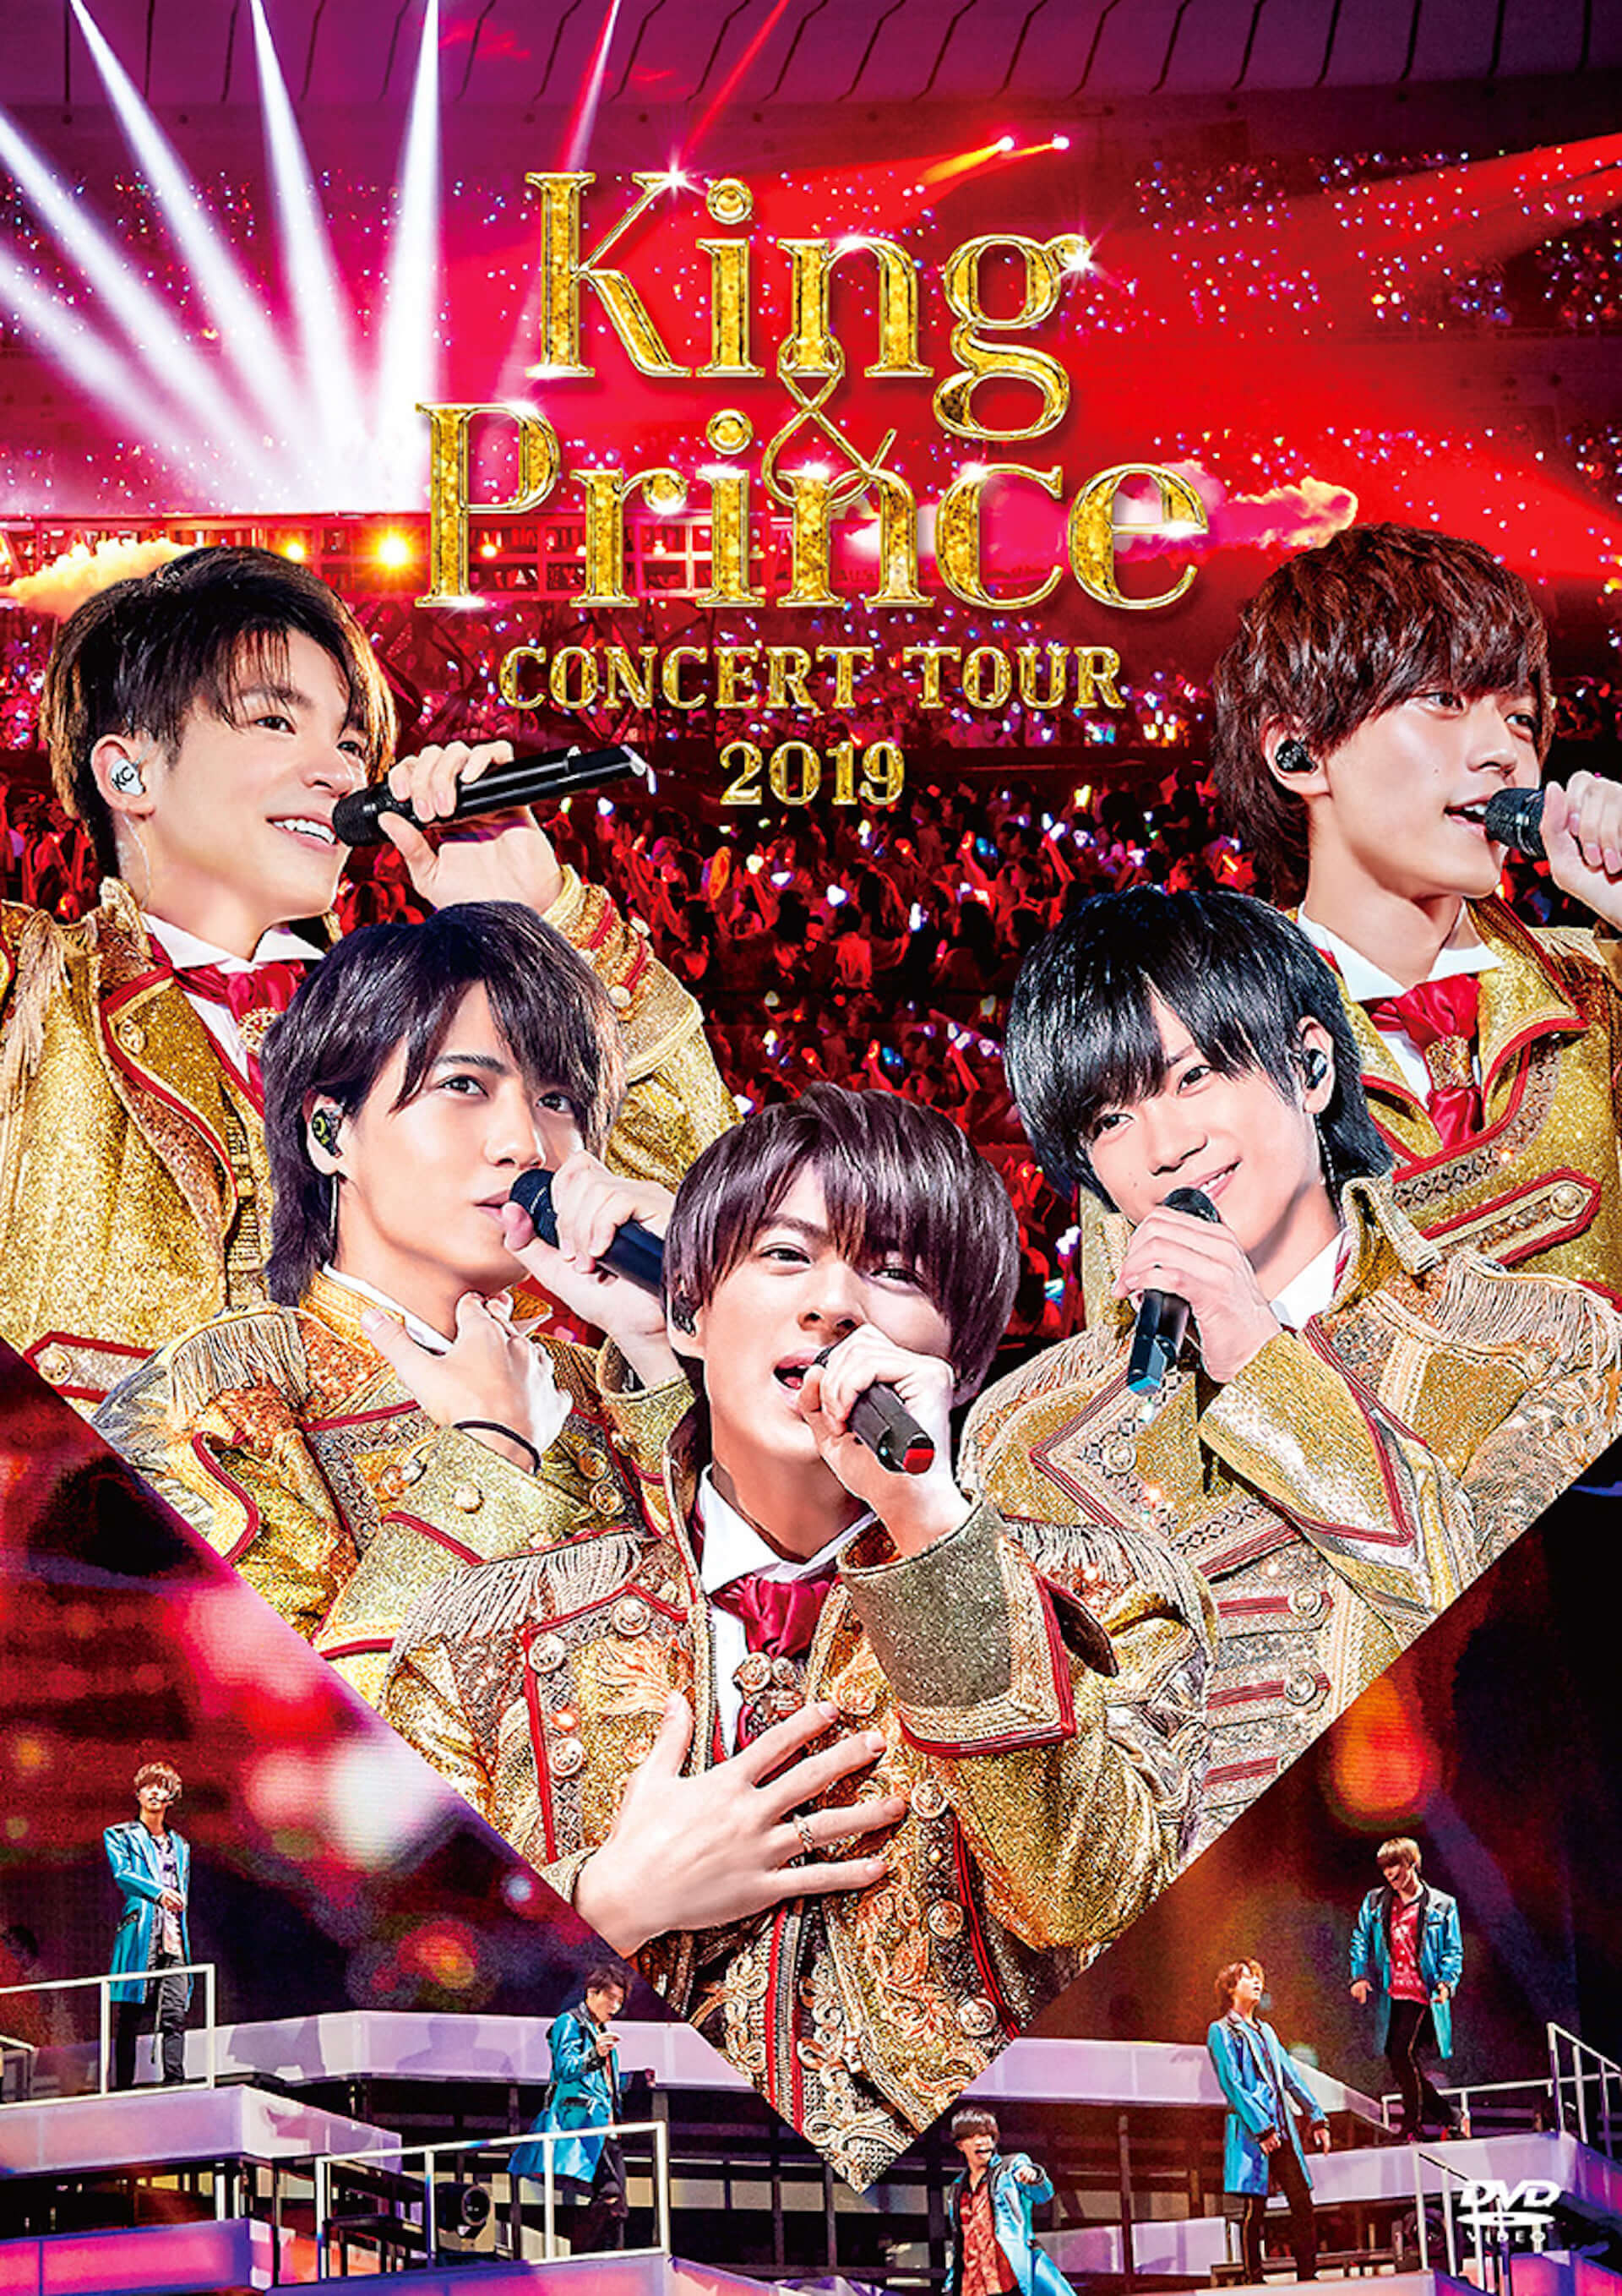 King&Prince/Concert tour DVD 2018 2019-